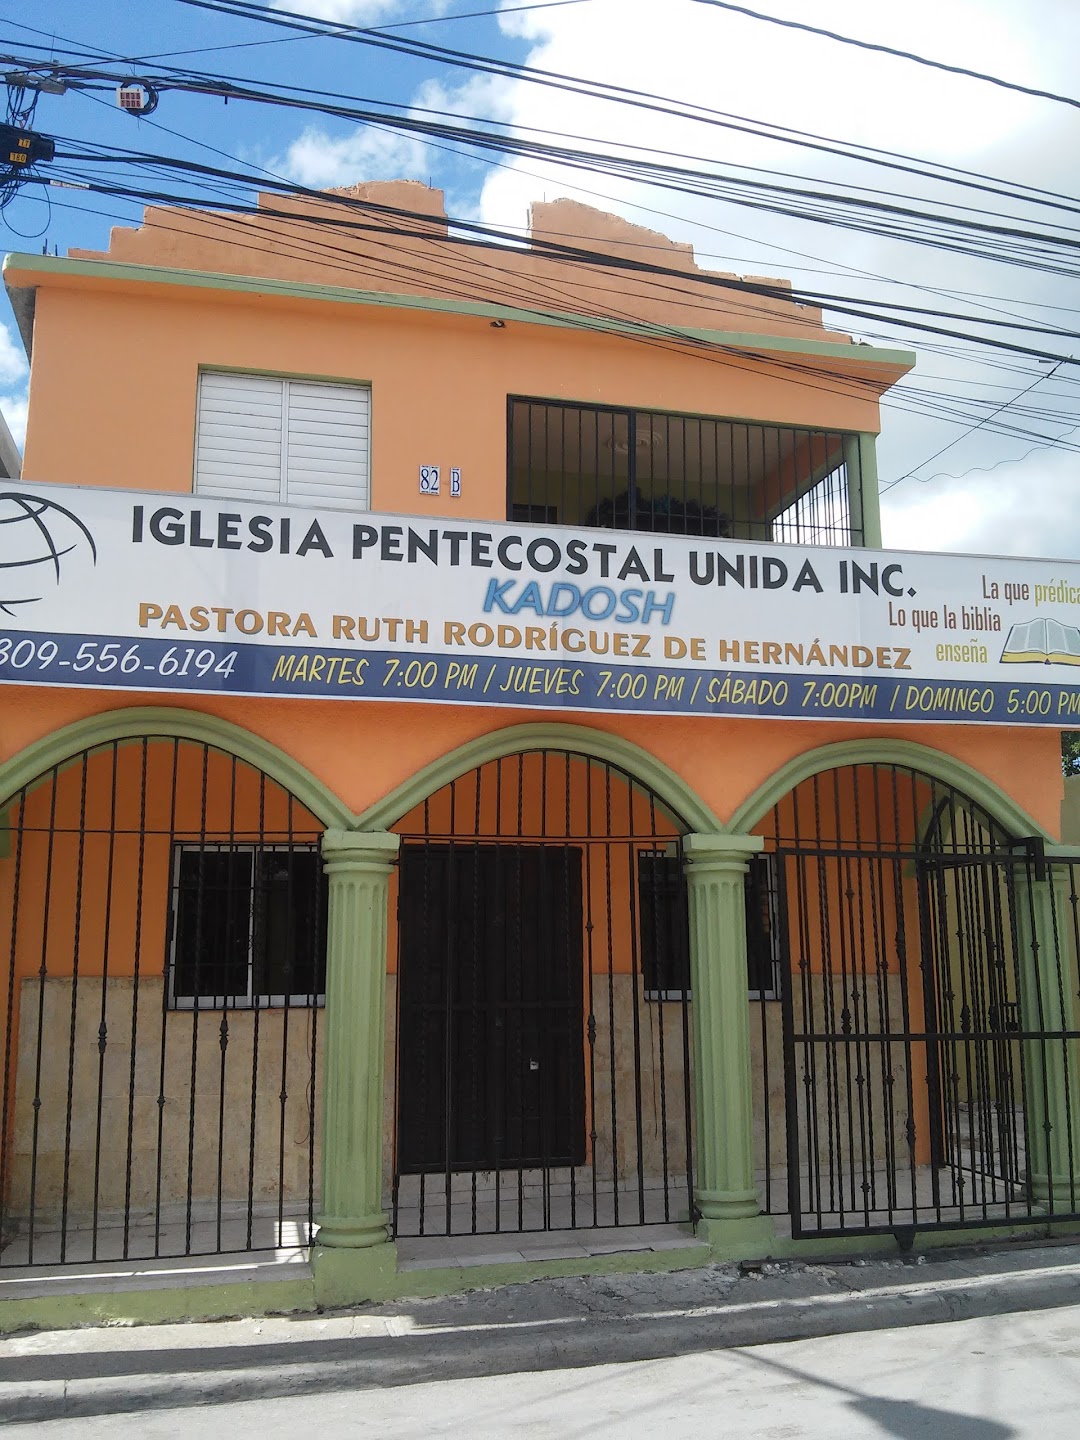 Iglesia Pentecostal Unida KADOSH